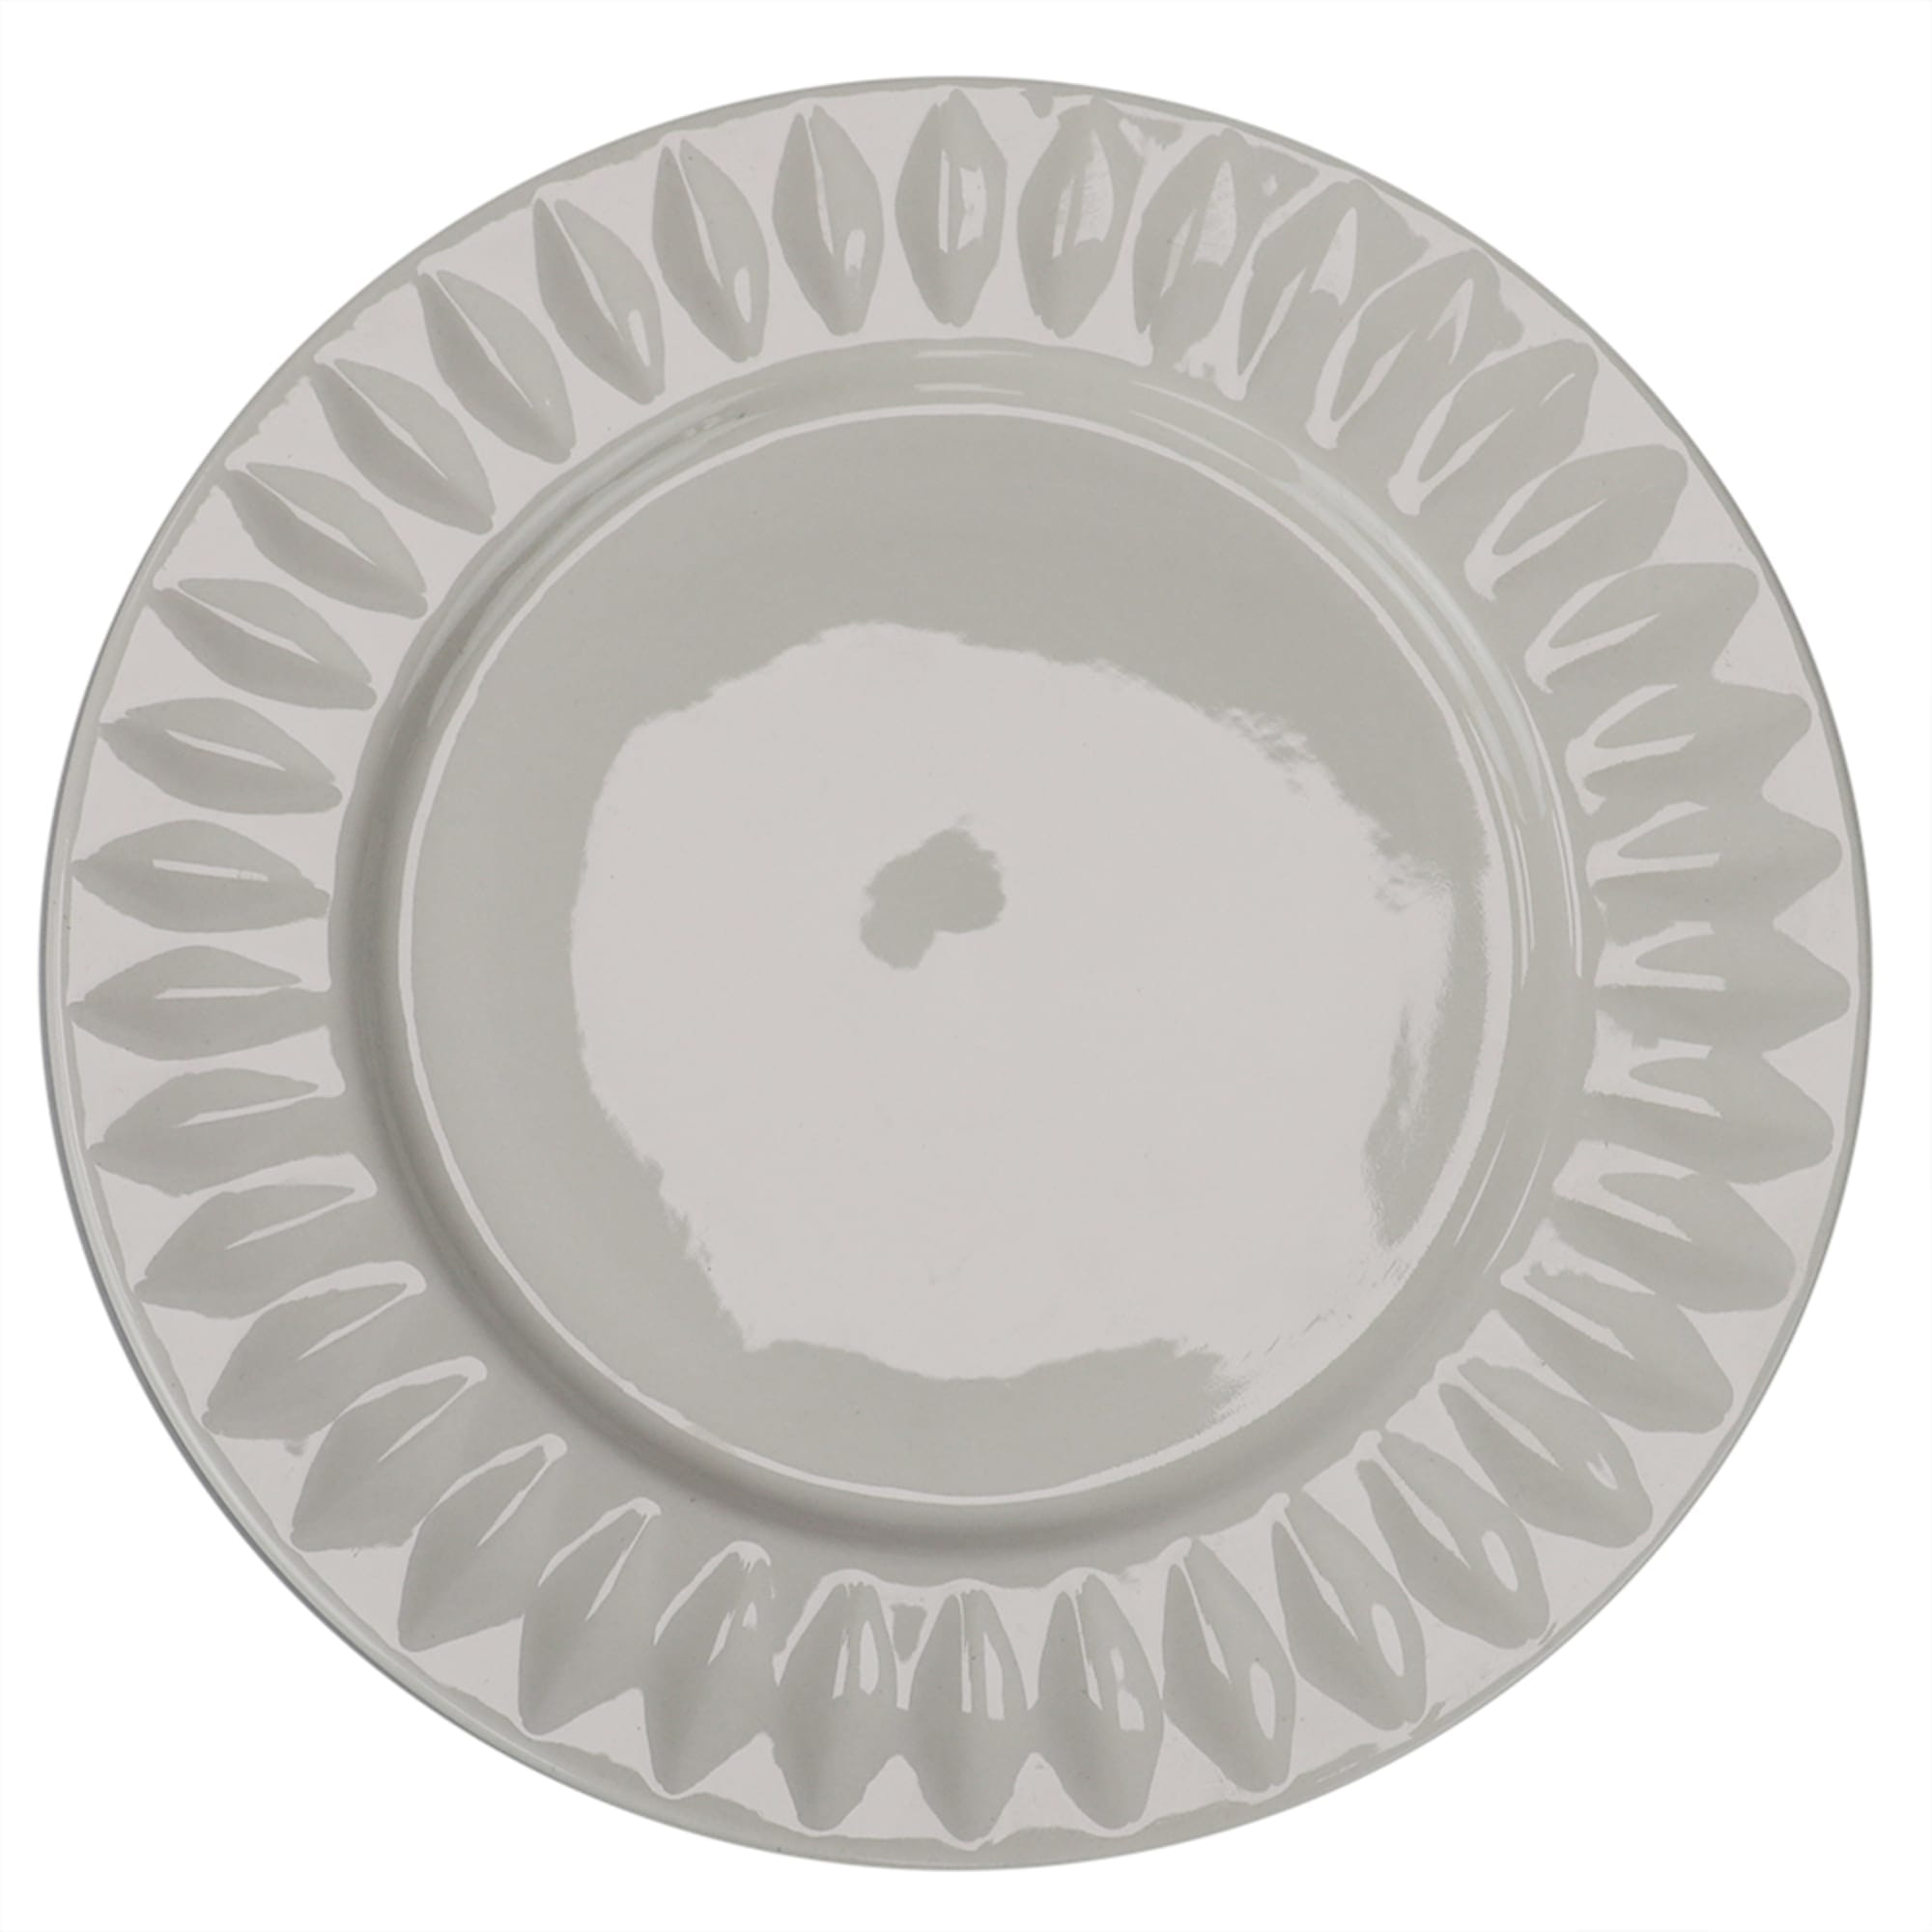 Home Basics Embossed Circle 10.5" Ceramic Dinner Plate, White $3.00 EACH, CASE PACK OF 24